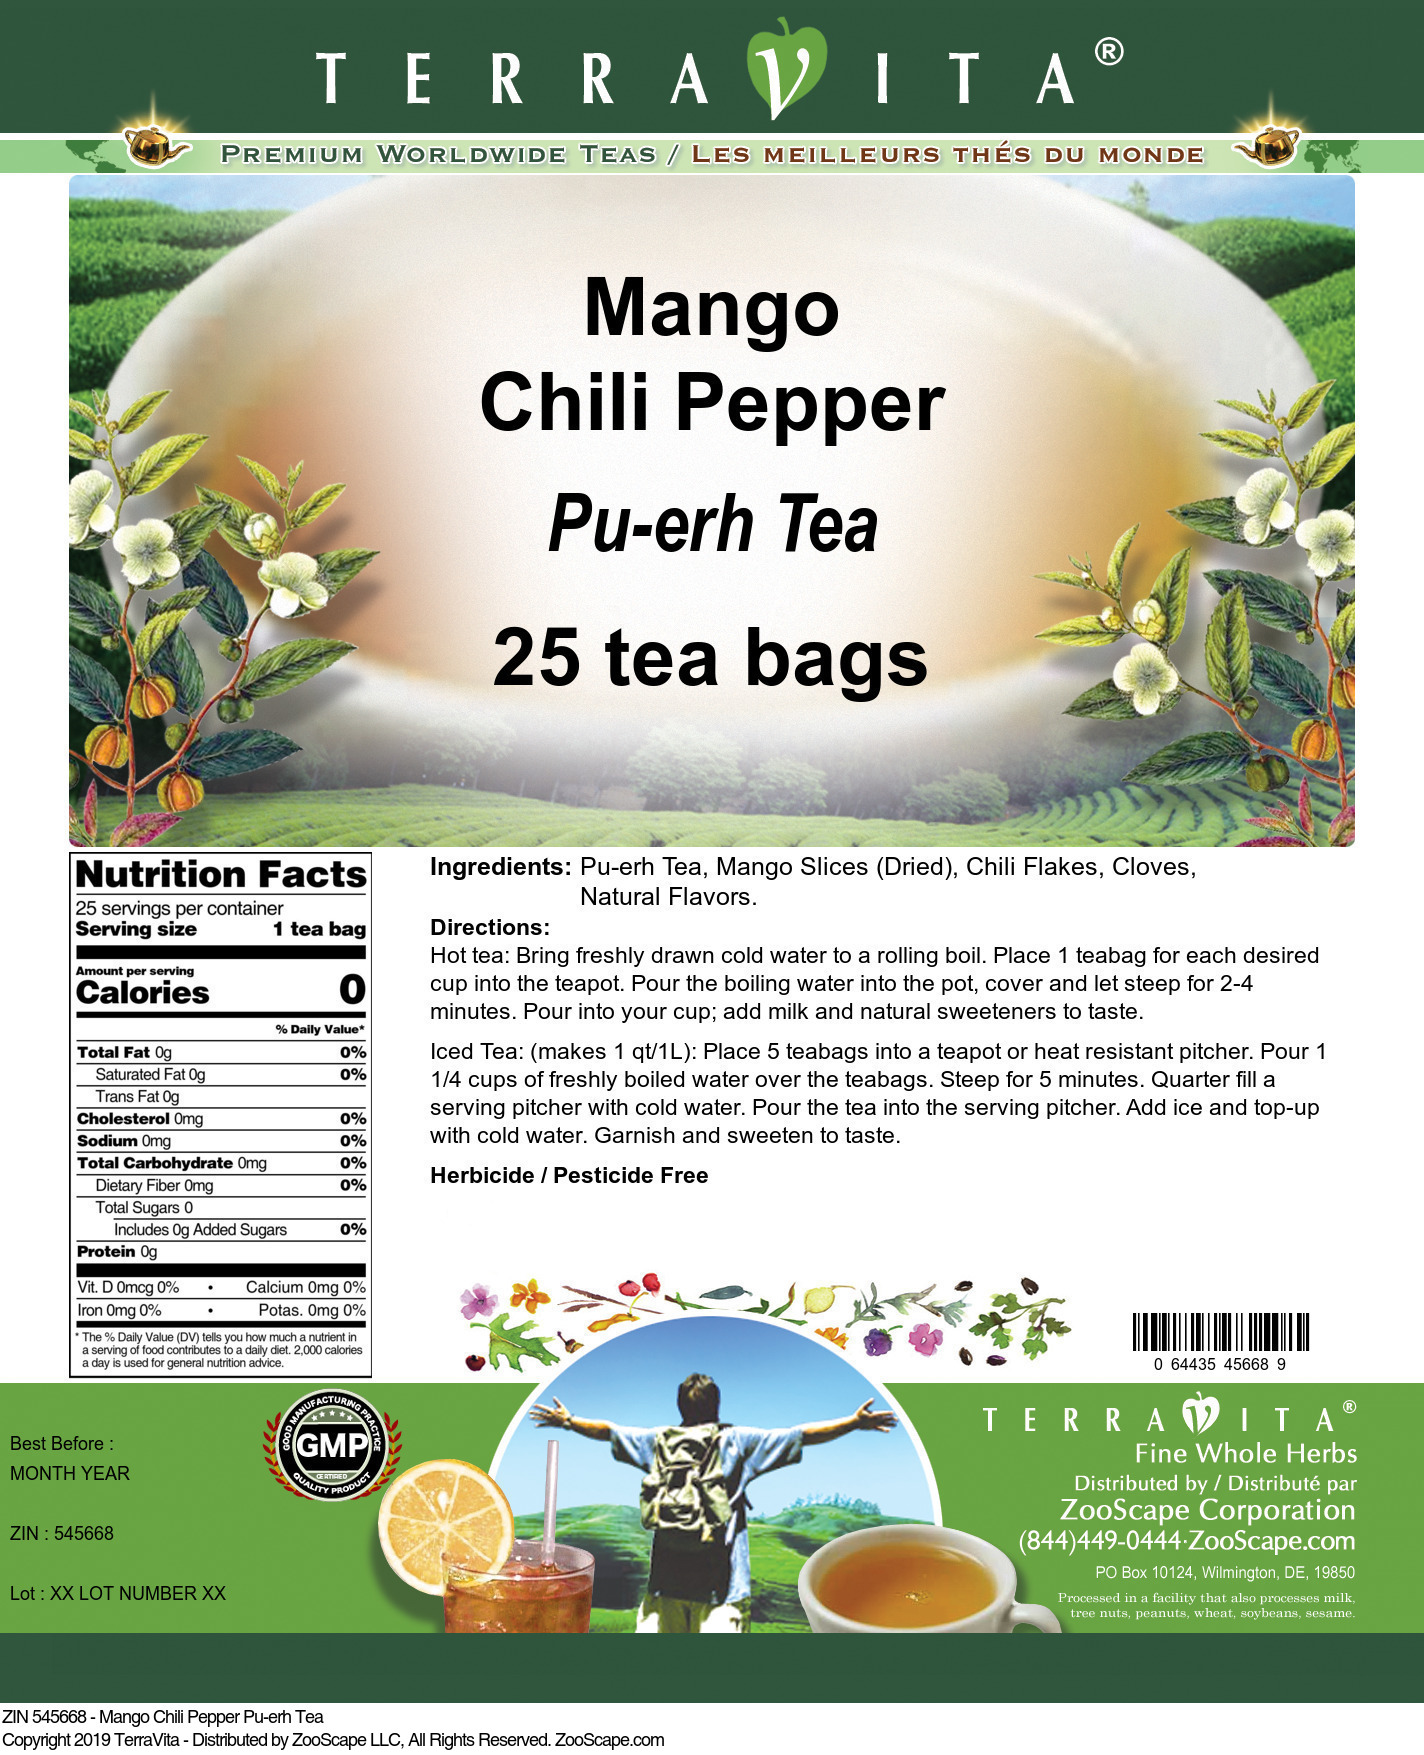 Mango Chili Pepper Pu-erh Tea - Label